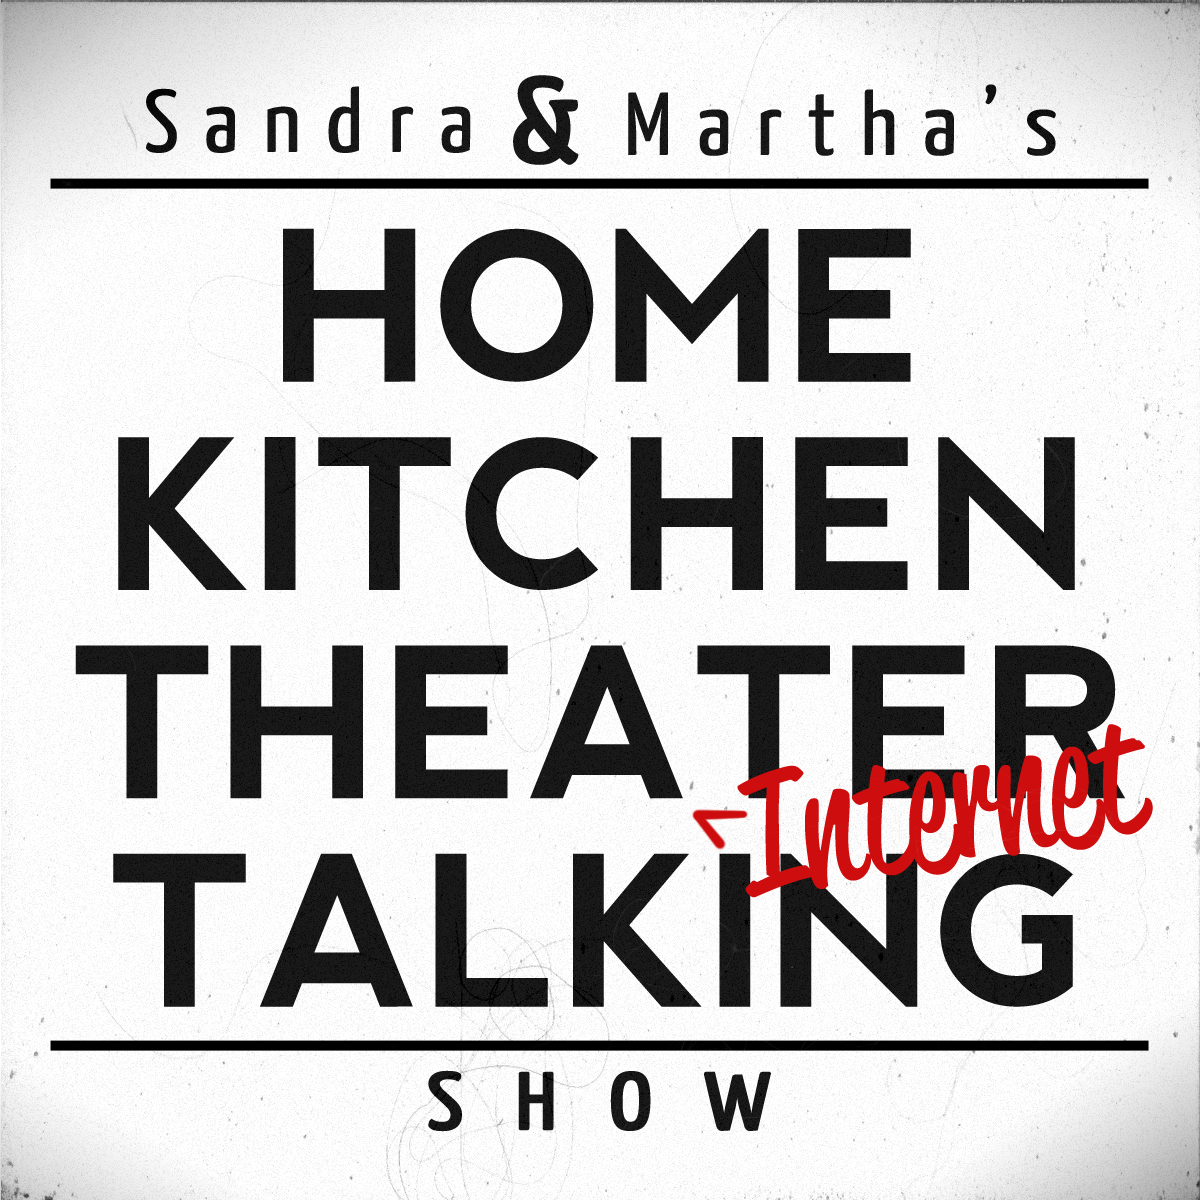 Sandra & Martha: Season 2 Episode 1